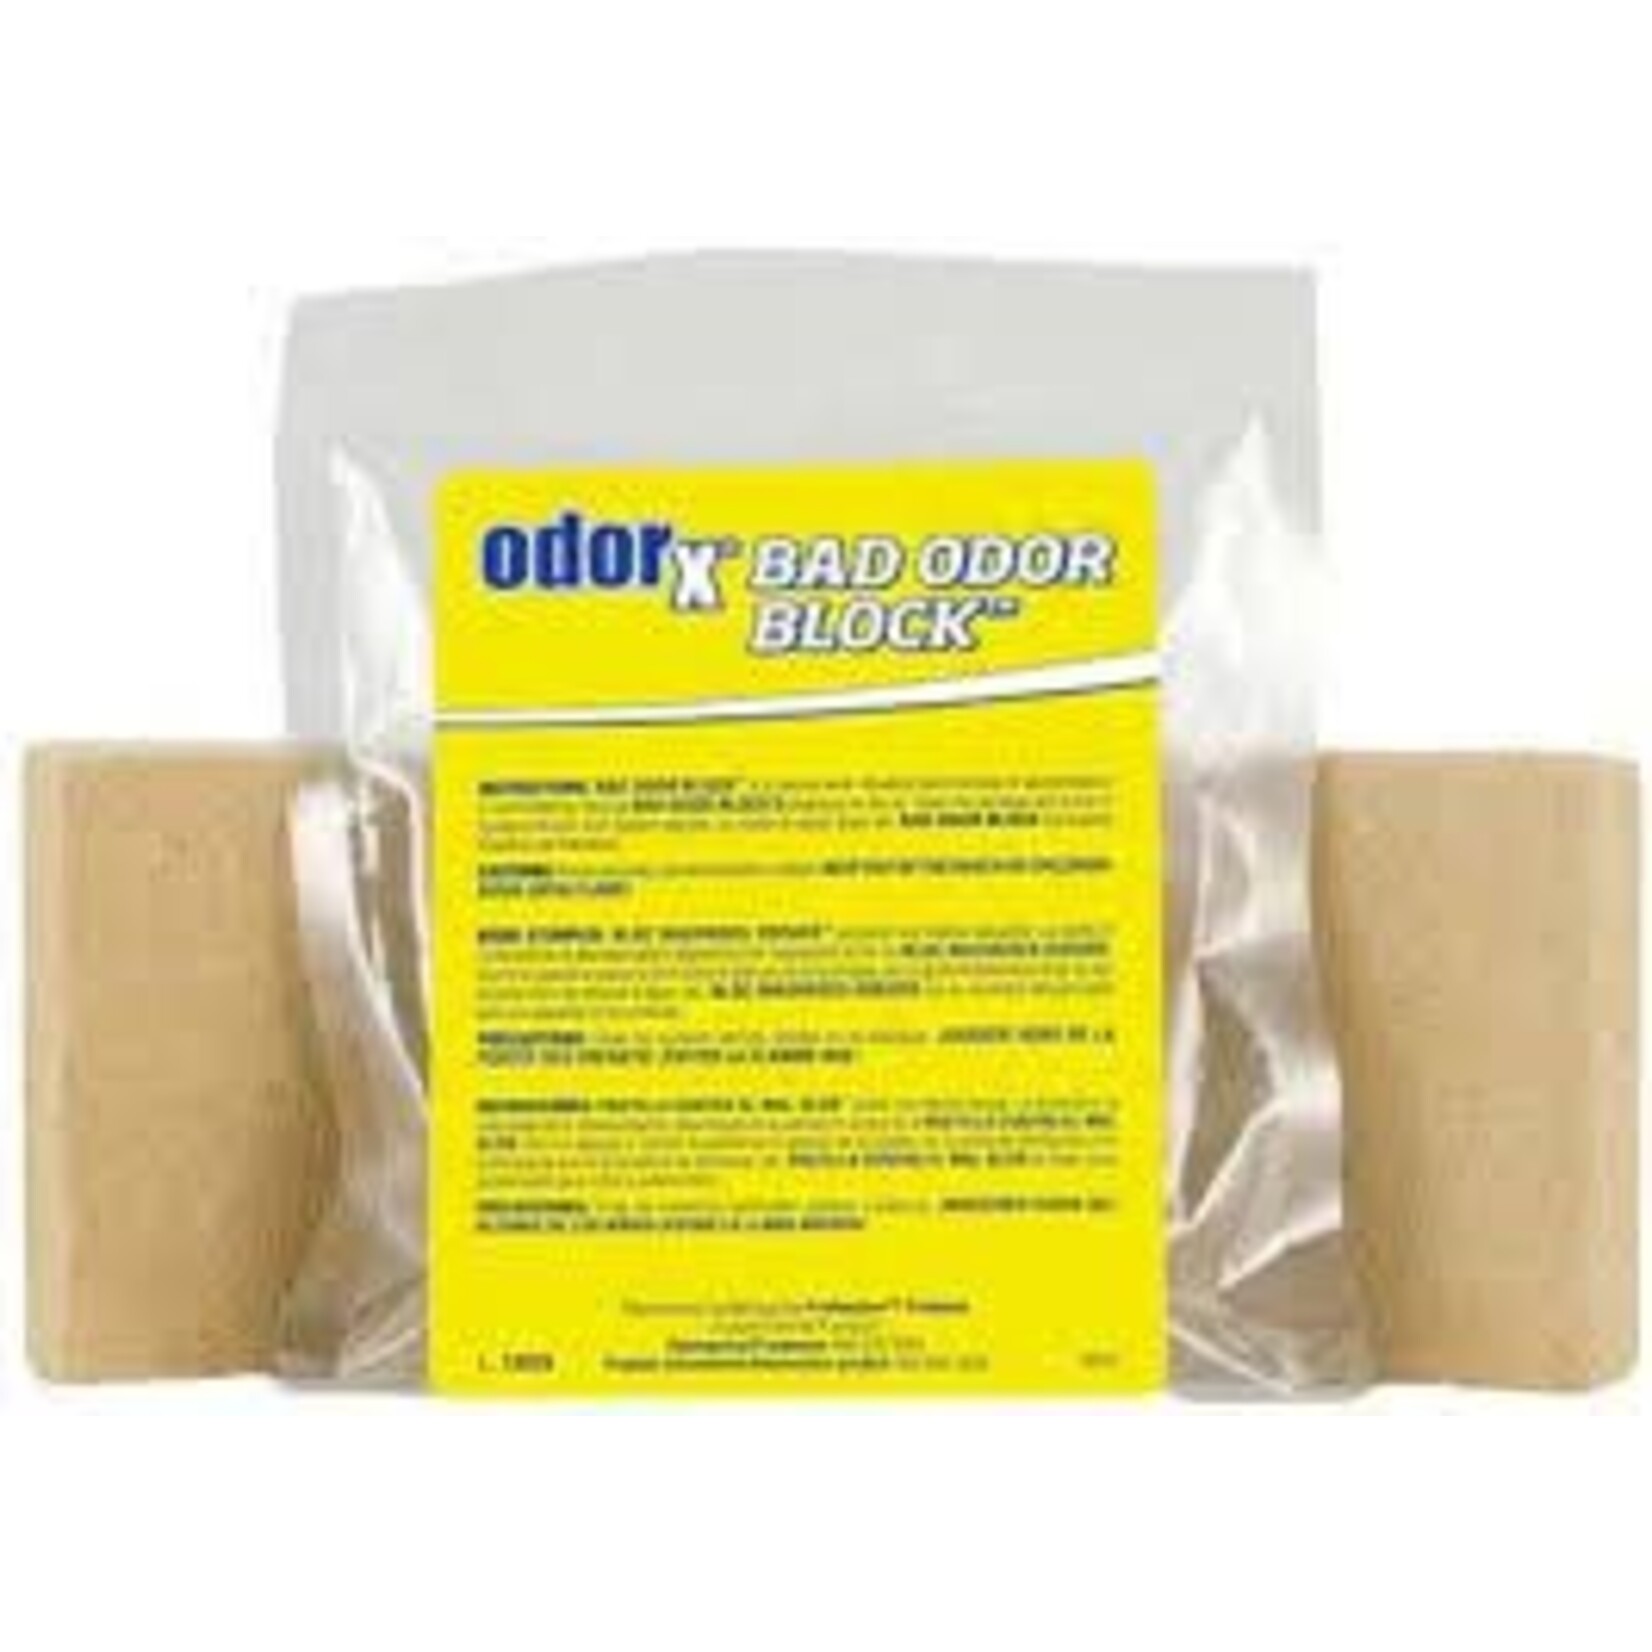 OdorX OdorX Bad Odor Block